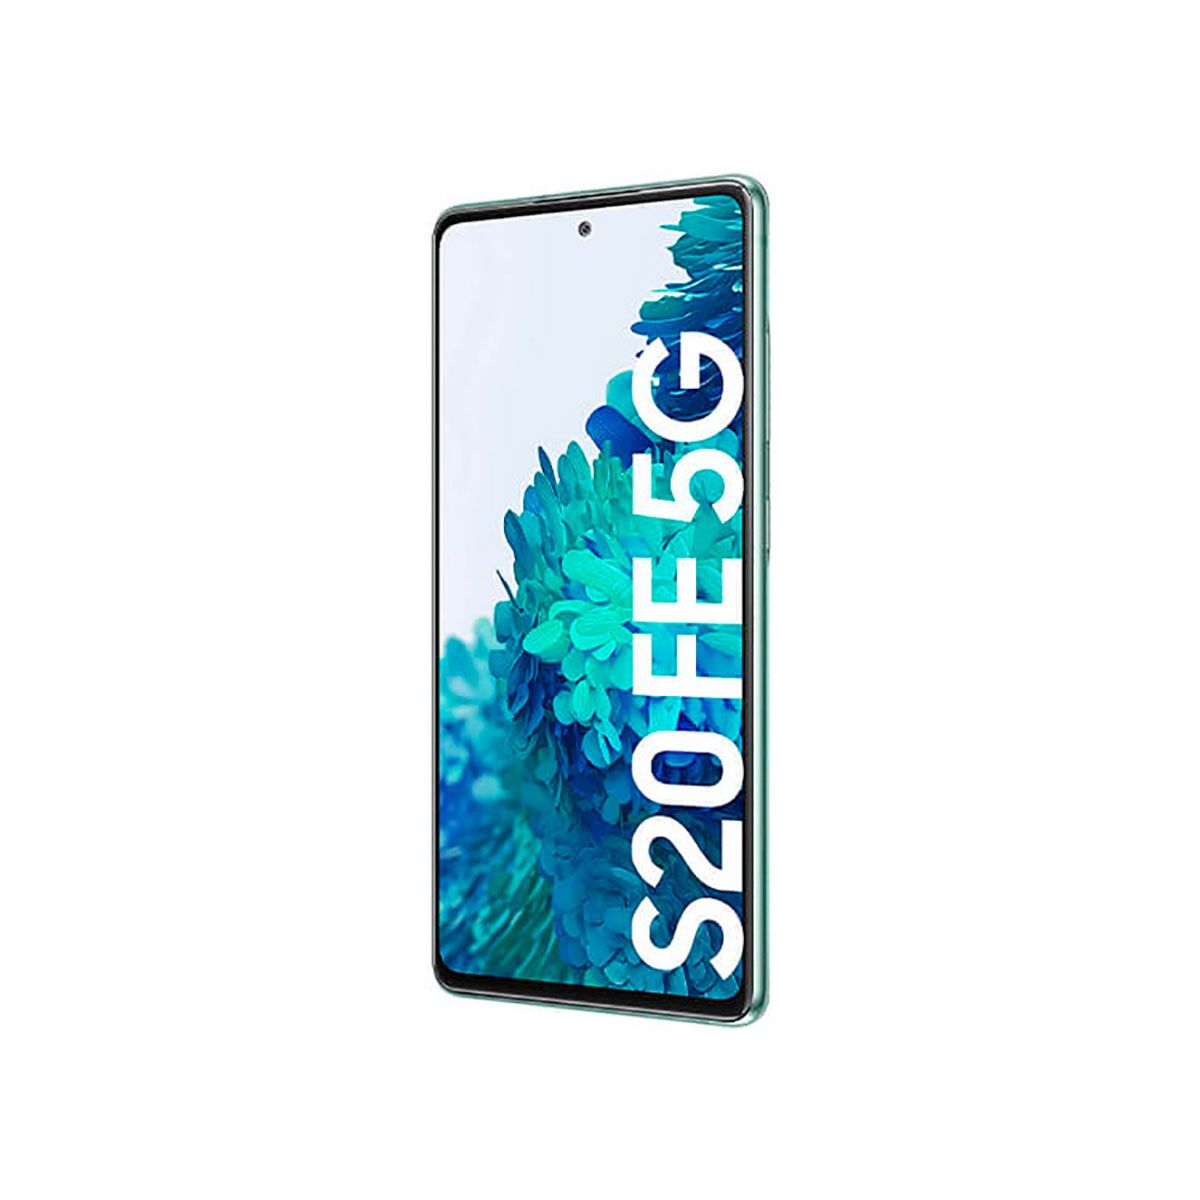 Samsung Galaxy S20 FE 5G 6GB/128GB Verde (Cloud Mint) Dual SIM G781B